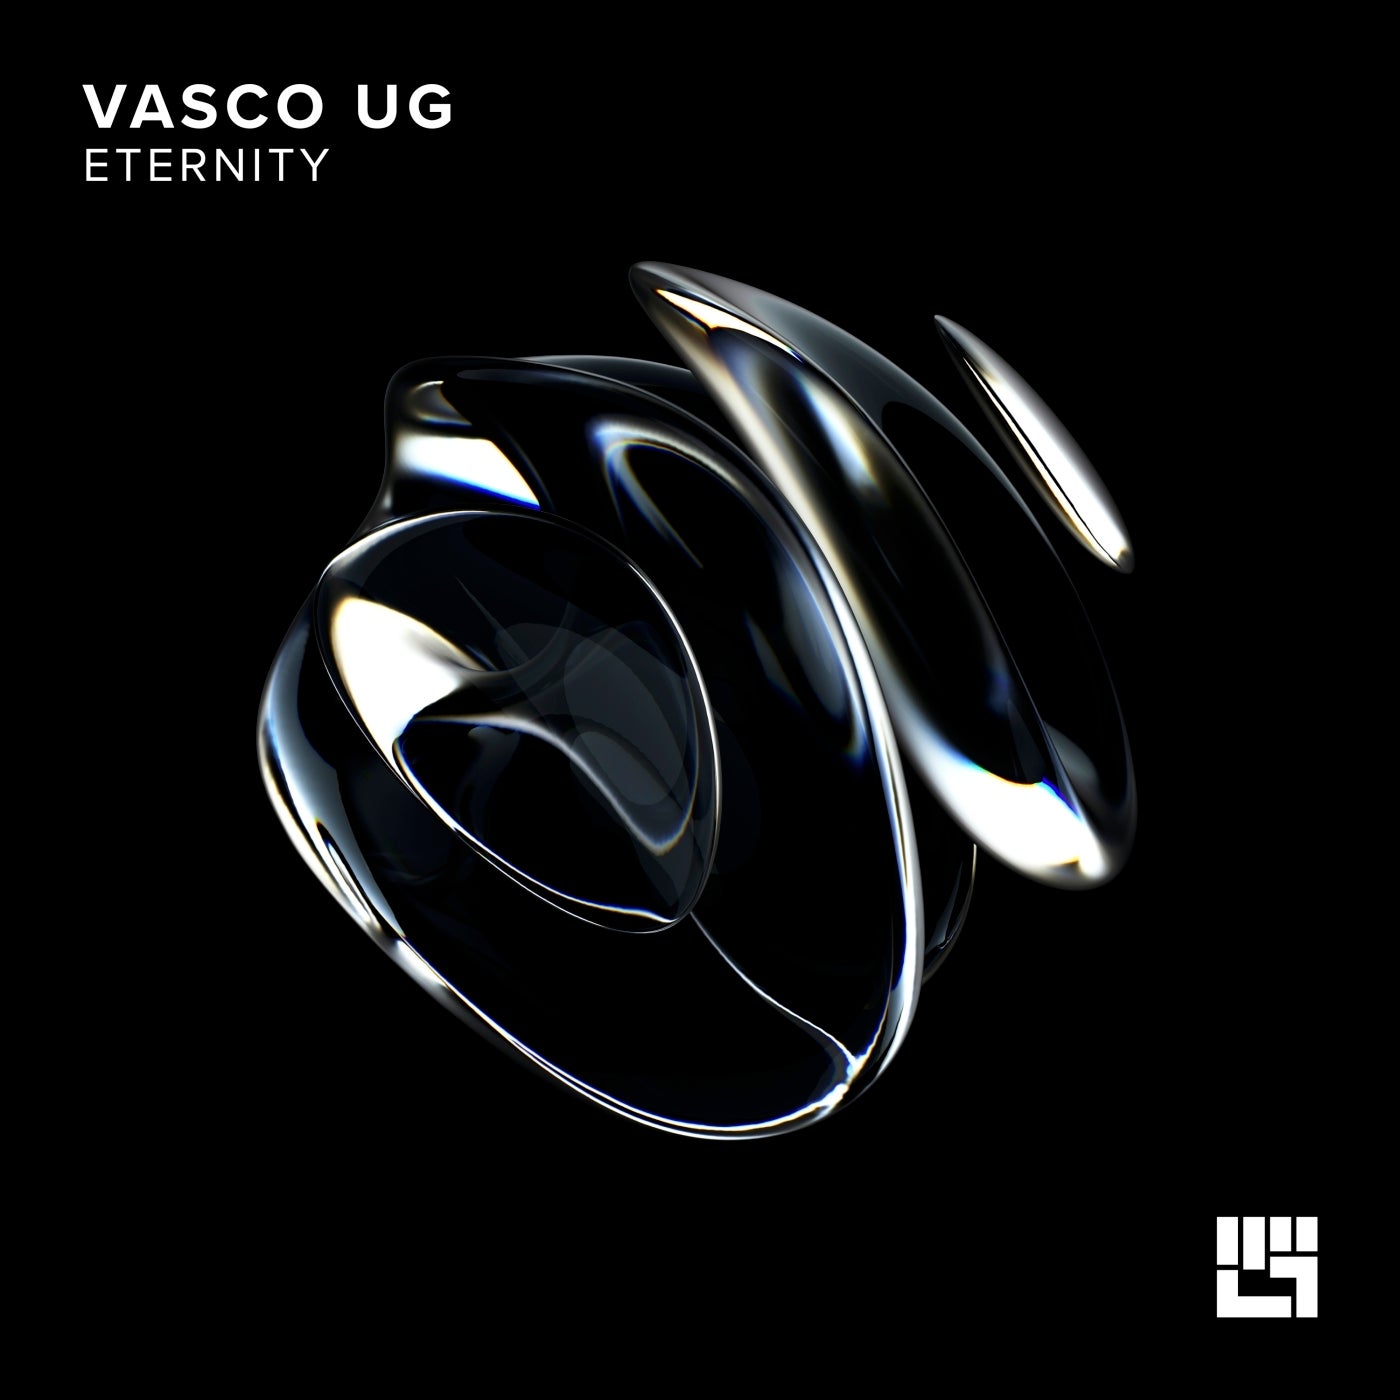 Vasco UG – Eternity [IVT005]